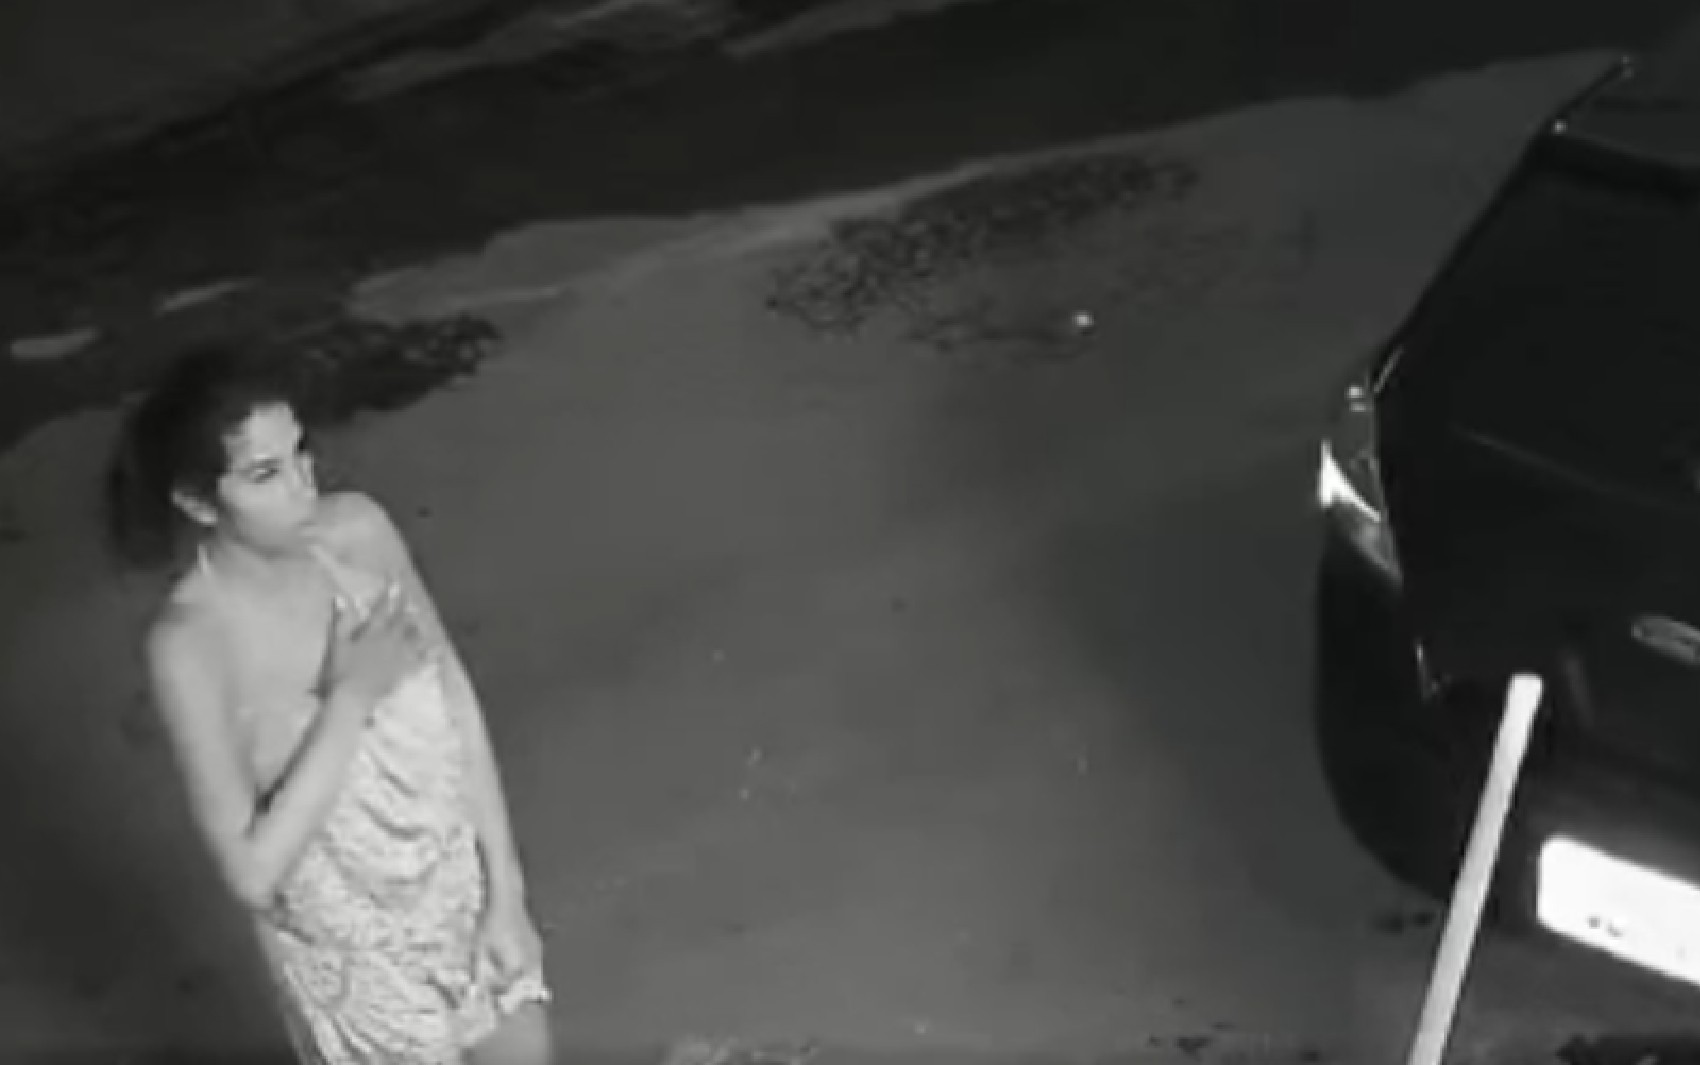 Novo vídeo mostra quando Jennifer Nayara vai até casa invadida por policiais e descobre que ela era alvo de mandado